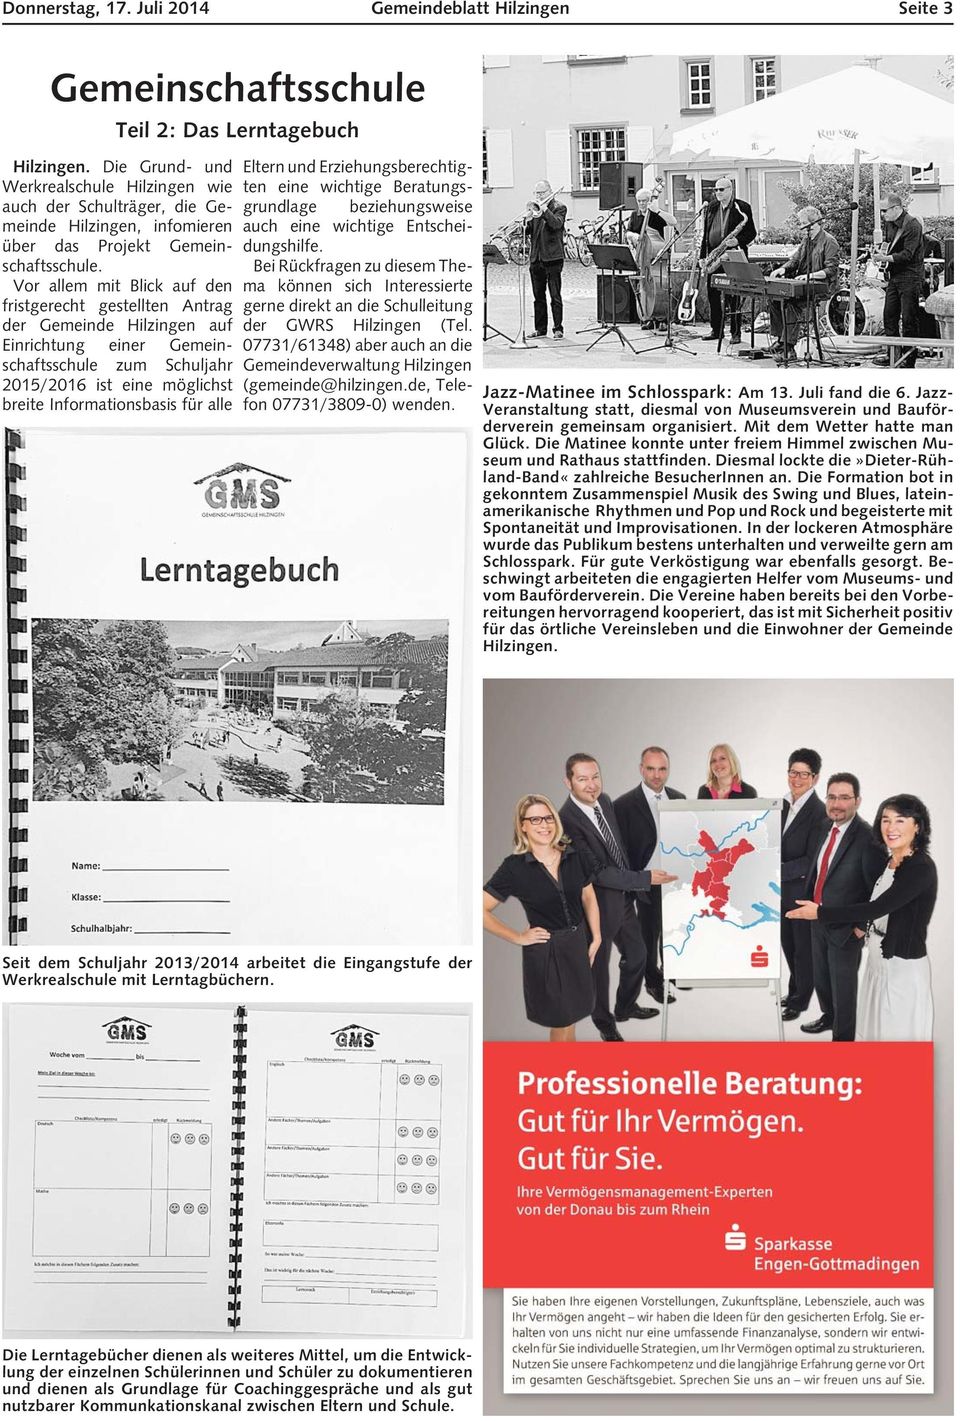 Vor allem mit Blick auf den fristgerecht gestellten Antrag der Gemeinde Hilzingen auf Einrichtung einer Gemeinschaftsschule zum Schuljahr 2015/2016 ist eine möglichst breite Informationsbasis für